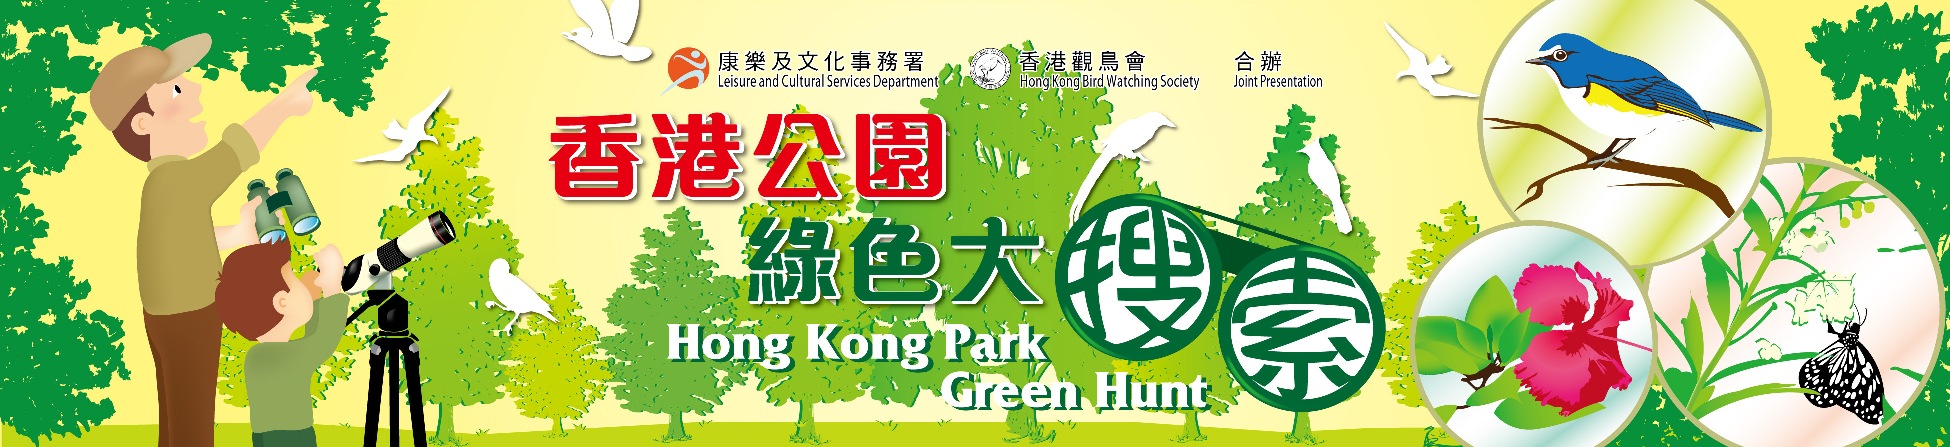 2014/15 香港公園綠色大搜索